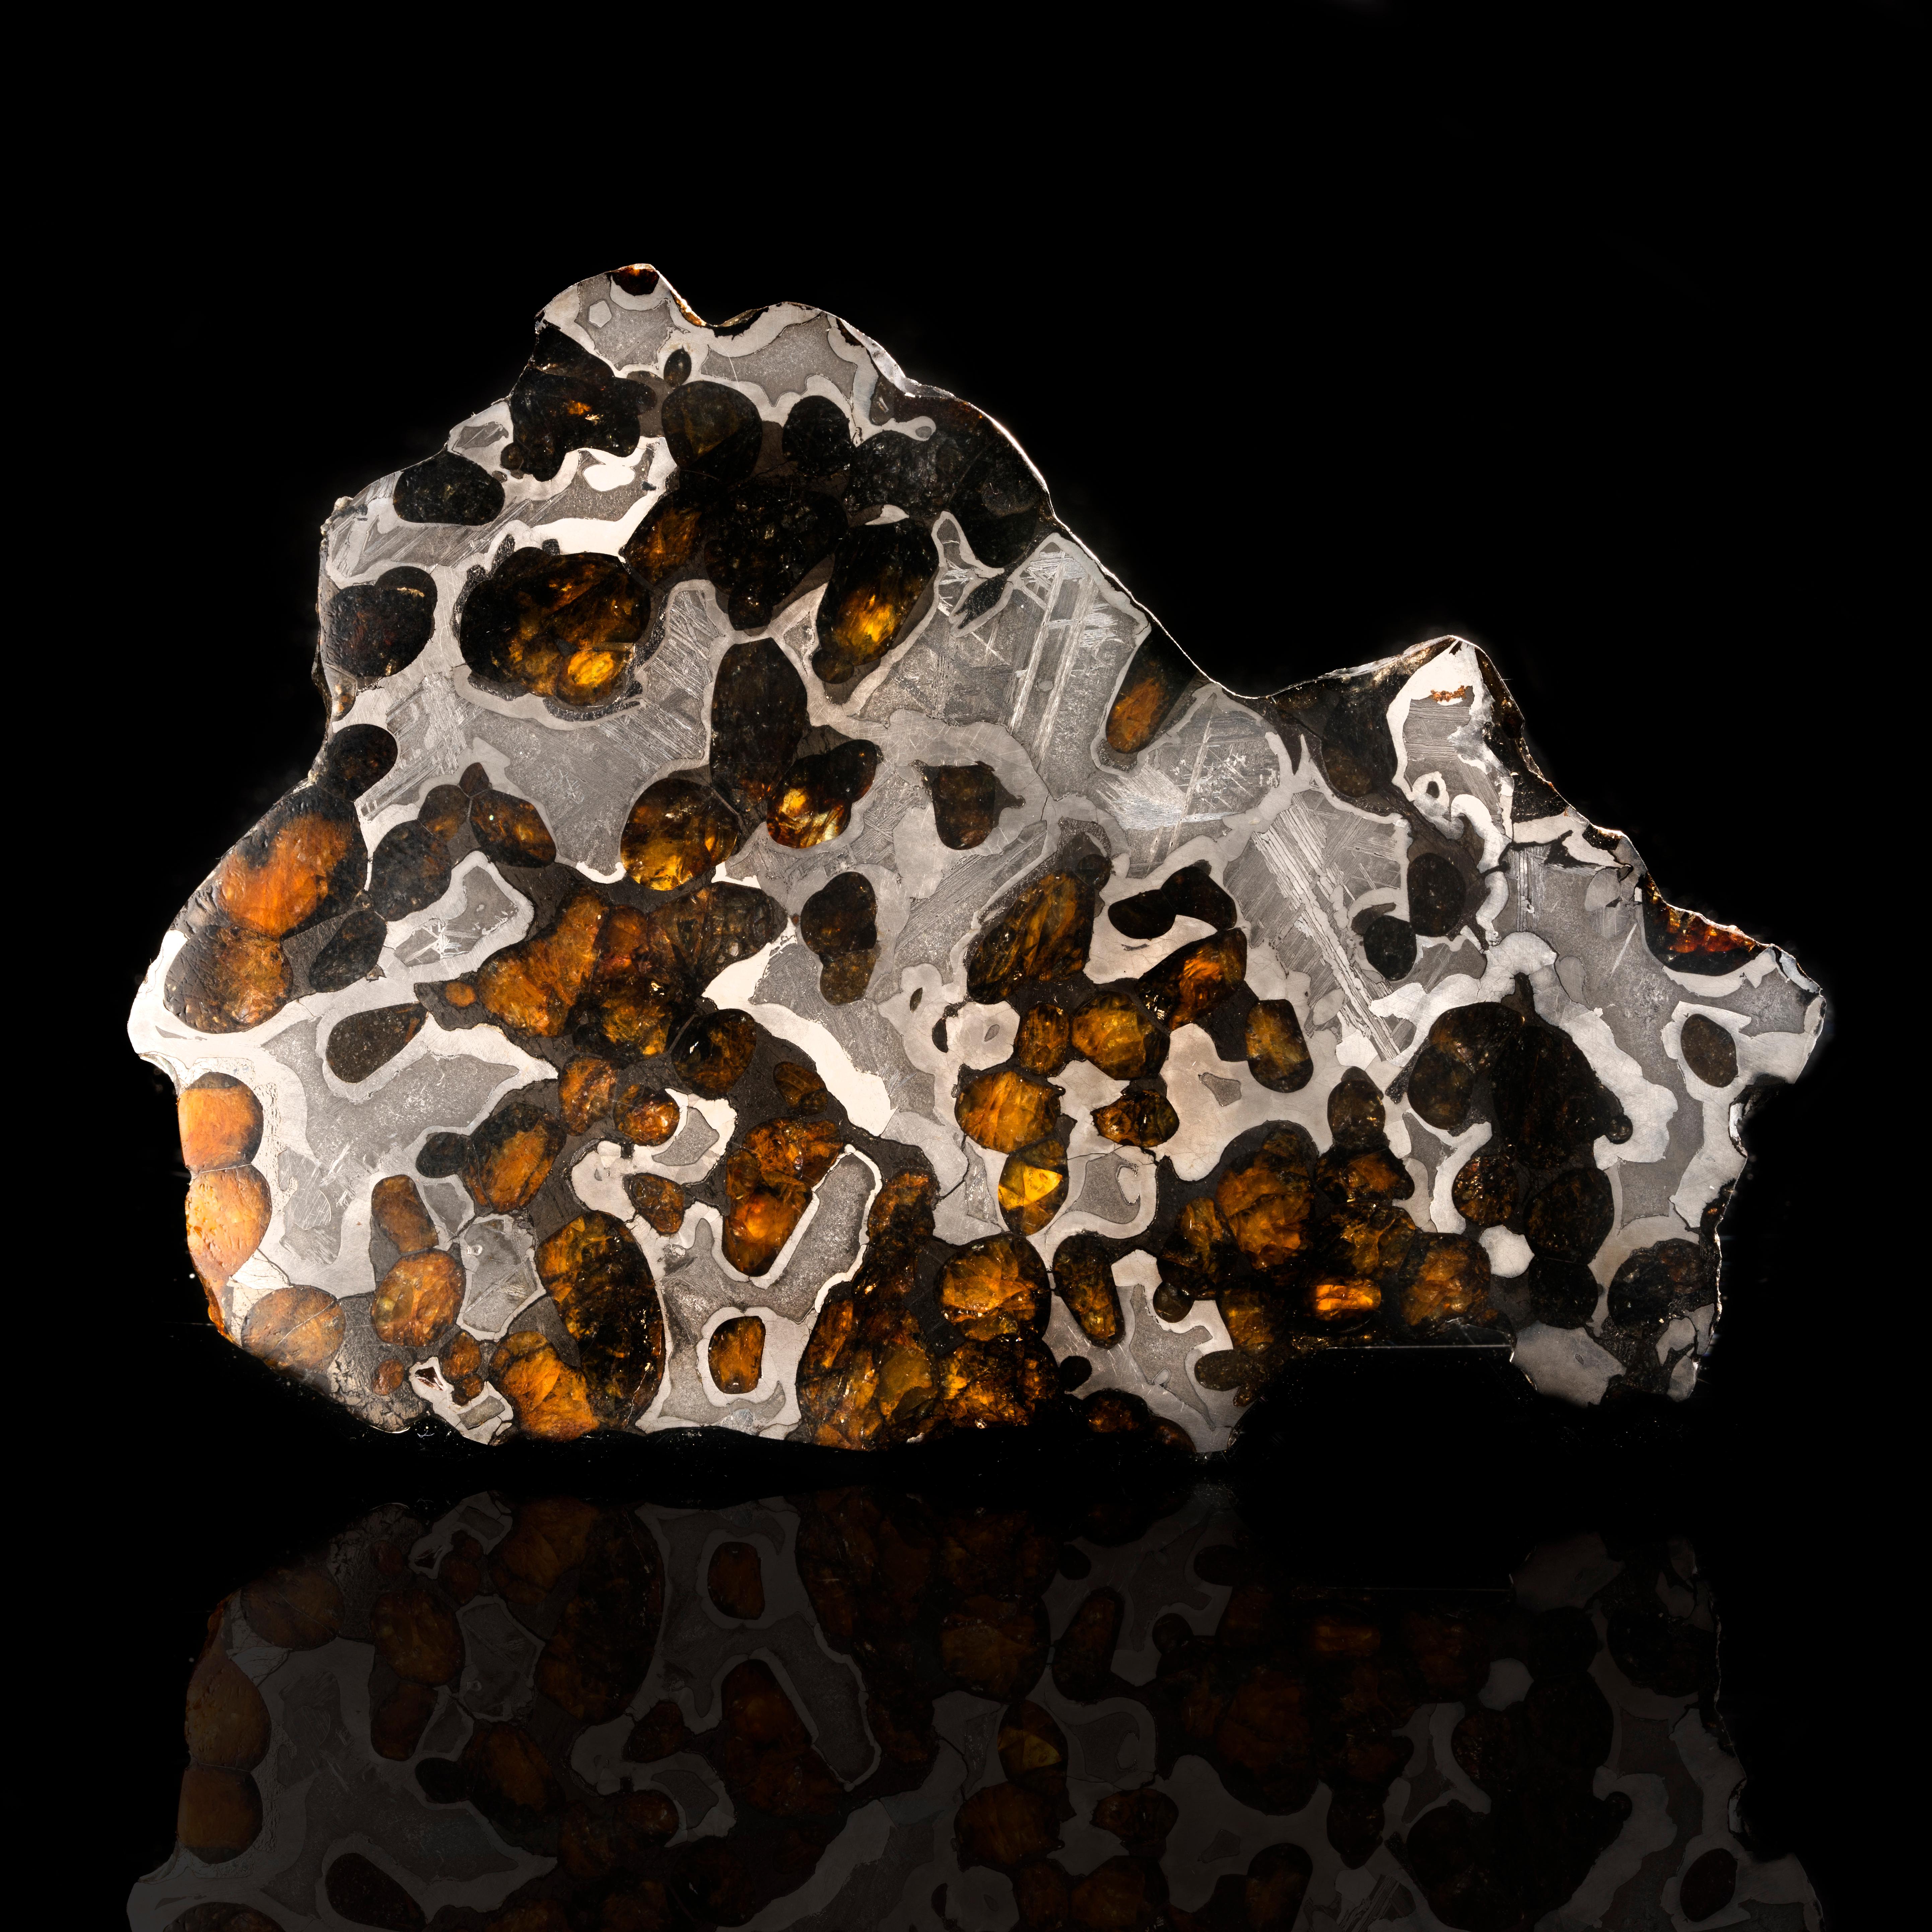 Der Brenham-Meteorit ist ein Pallasit-Meteorit, der 1882 in Kansas gefunden wurde. Er ist einer der wenigen Pallasit-Meteoriten, eine Meteoritenart mit wunderschönen grünen und orangefarbenen Olivinkristallen, die in einem groben